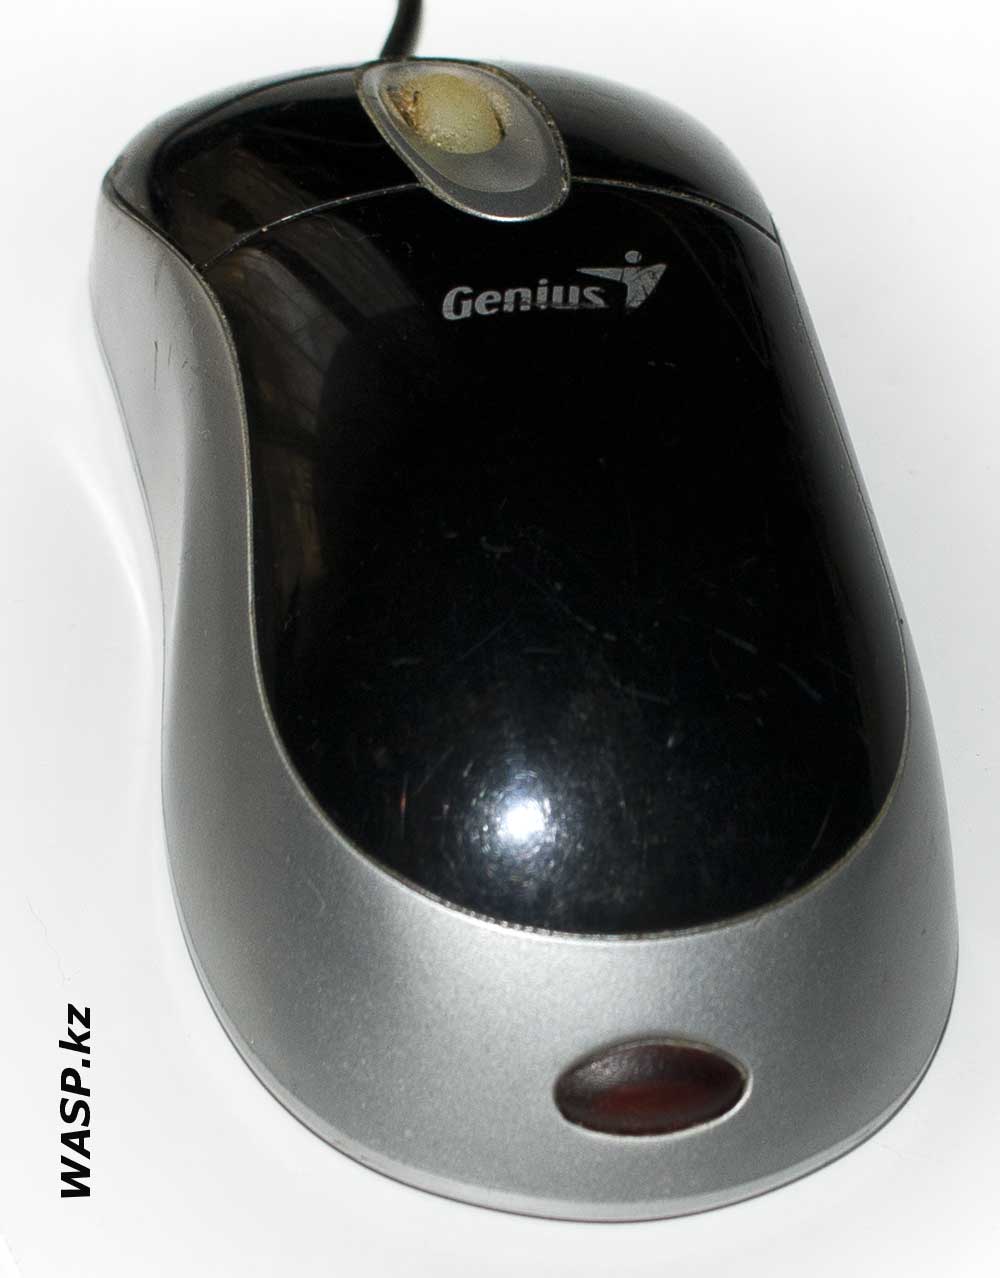 Оптическая мышь Genius Ergo 330 Optical Eye 2006 года описание